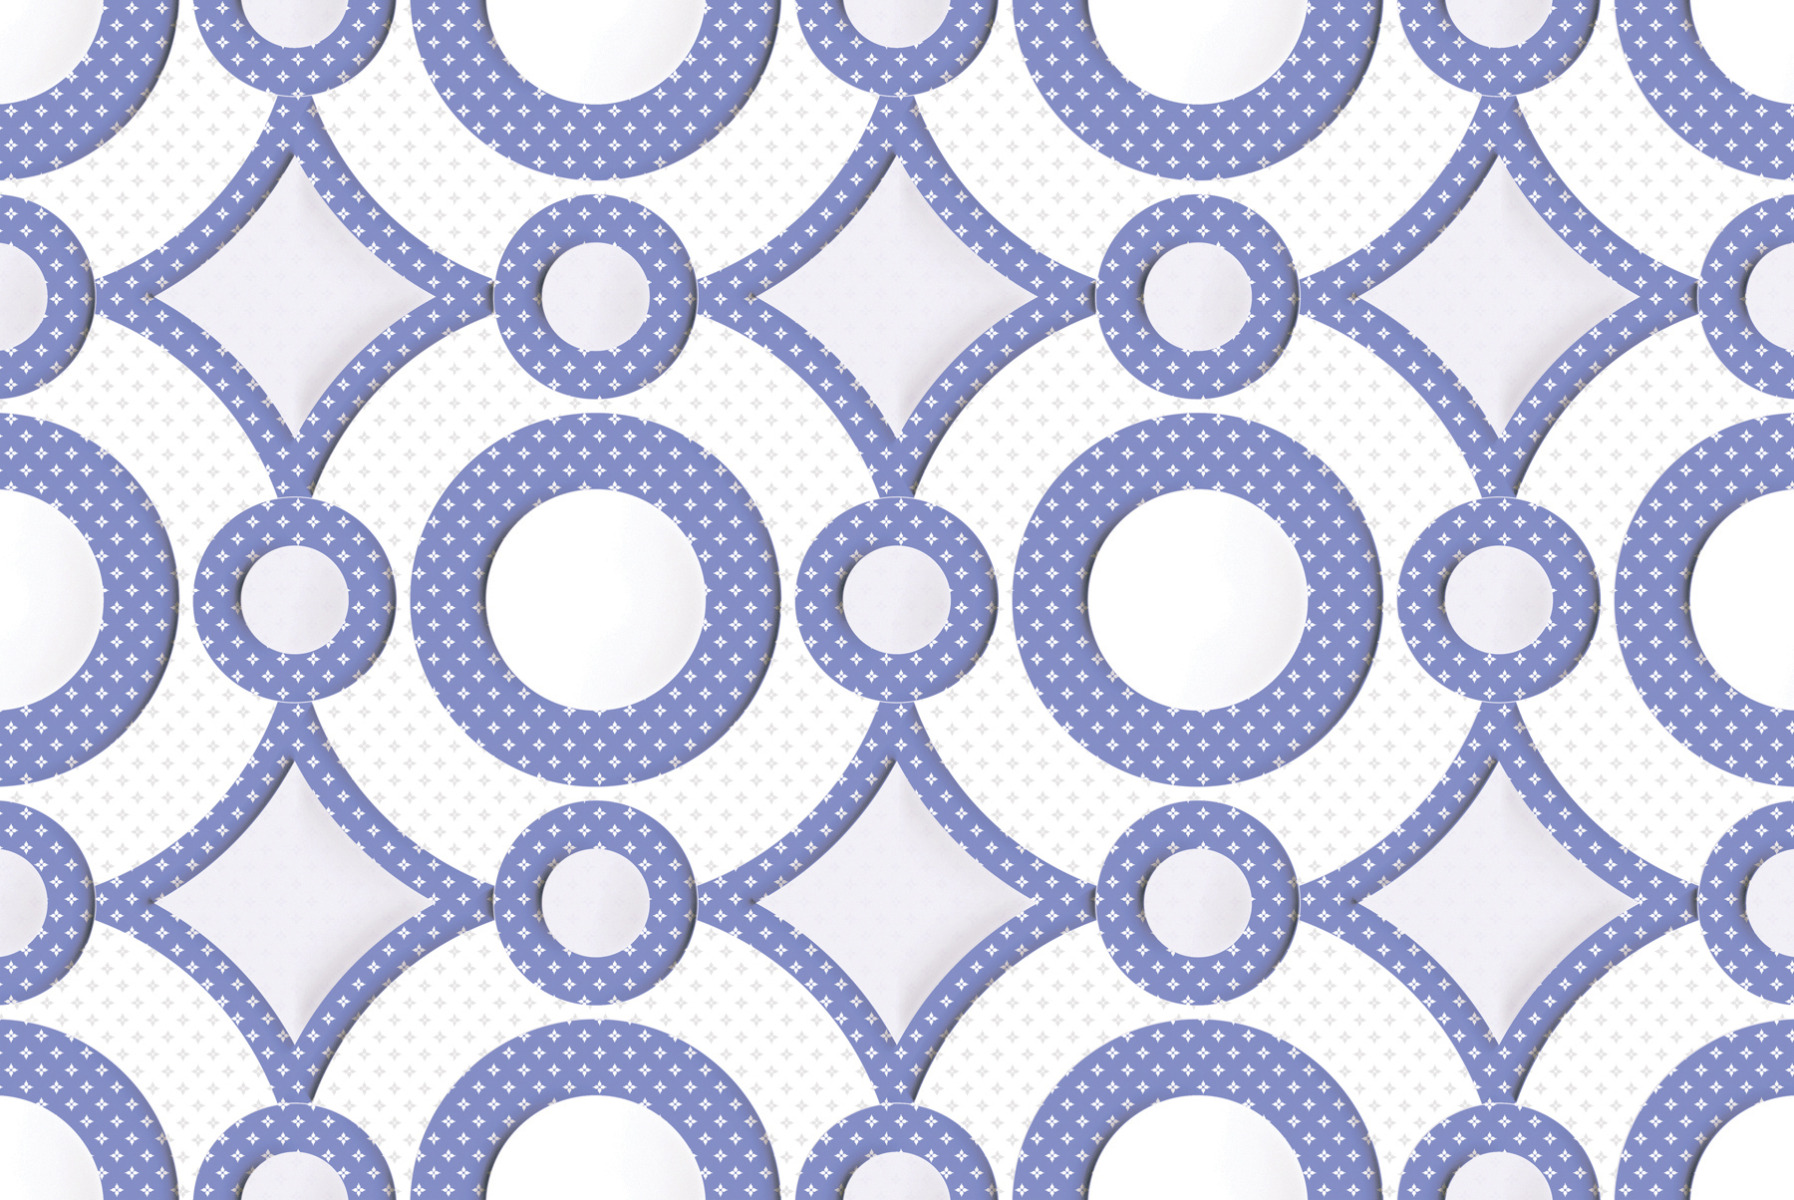 Purple Tiles for Accent Tiles